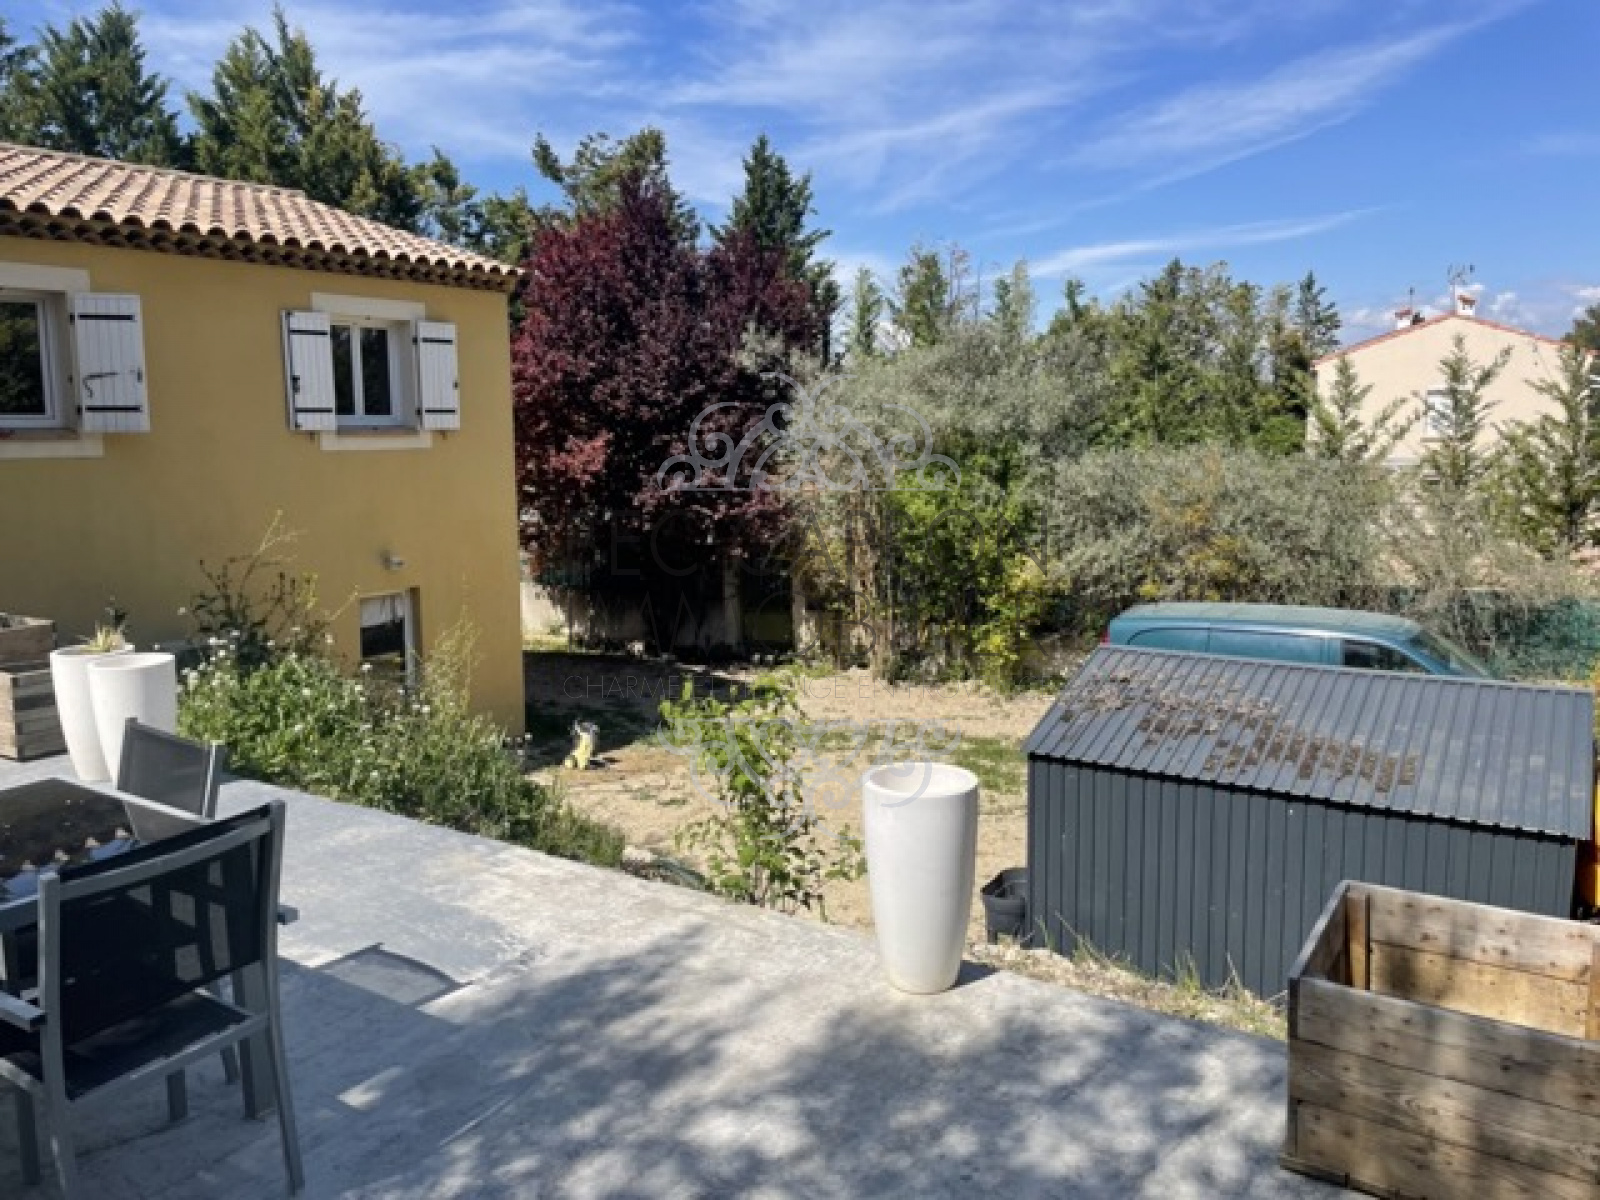 Image_3, Maisons (maison, propriÃ©tÃ©, villa, Mas,bastide, maison de village), Aix-en-Provence, ref :1220VM